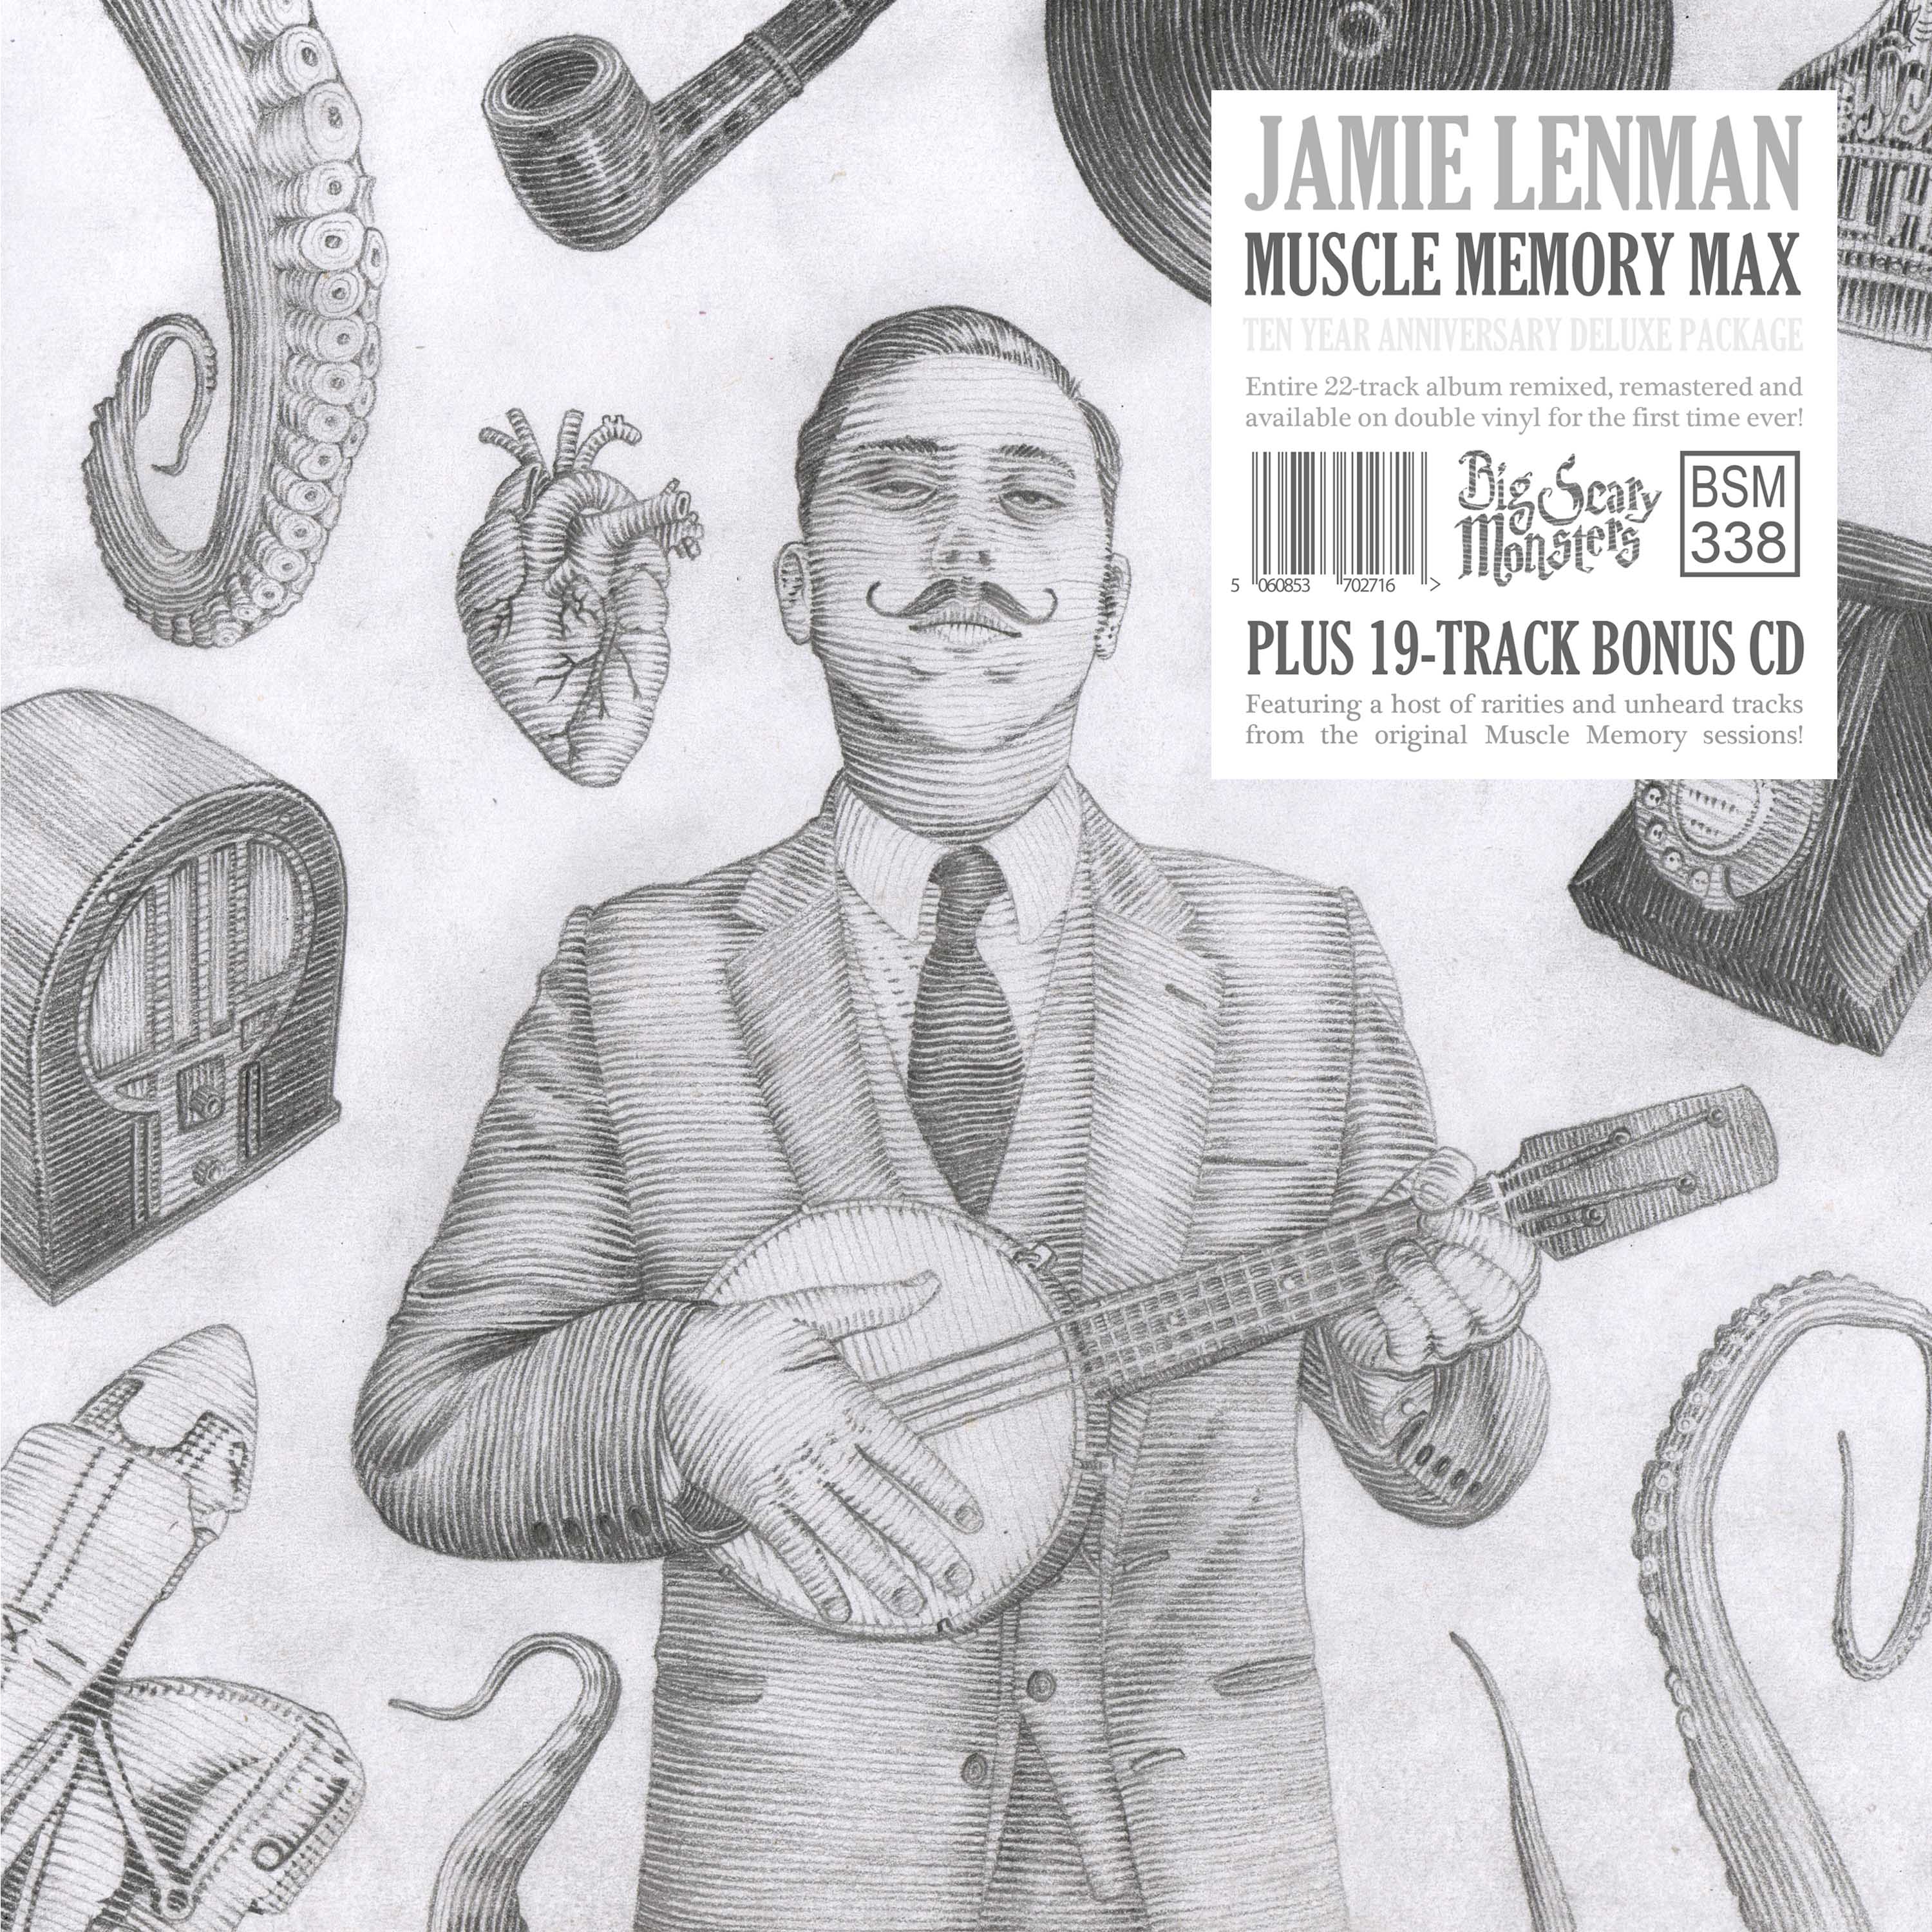 Jamie Lenman - Muscle Memory Max 2LP with bonus CD